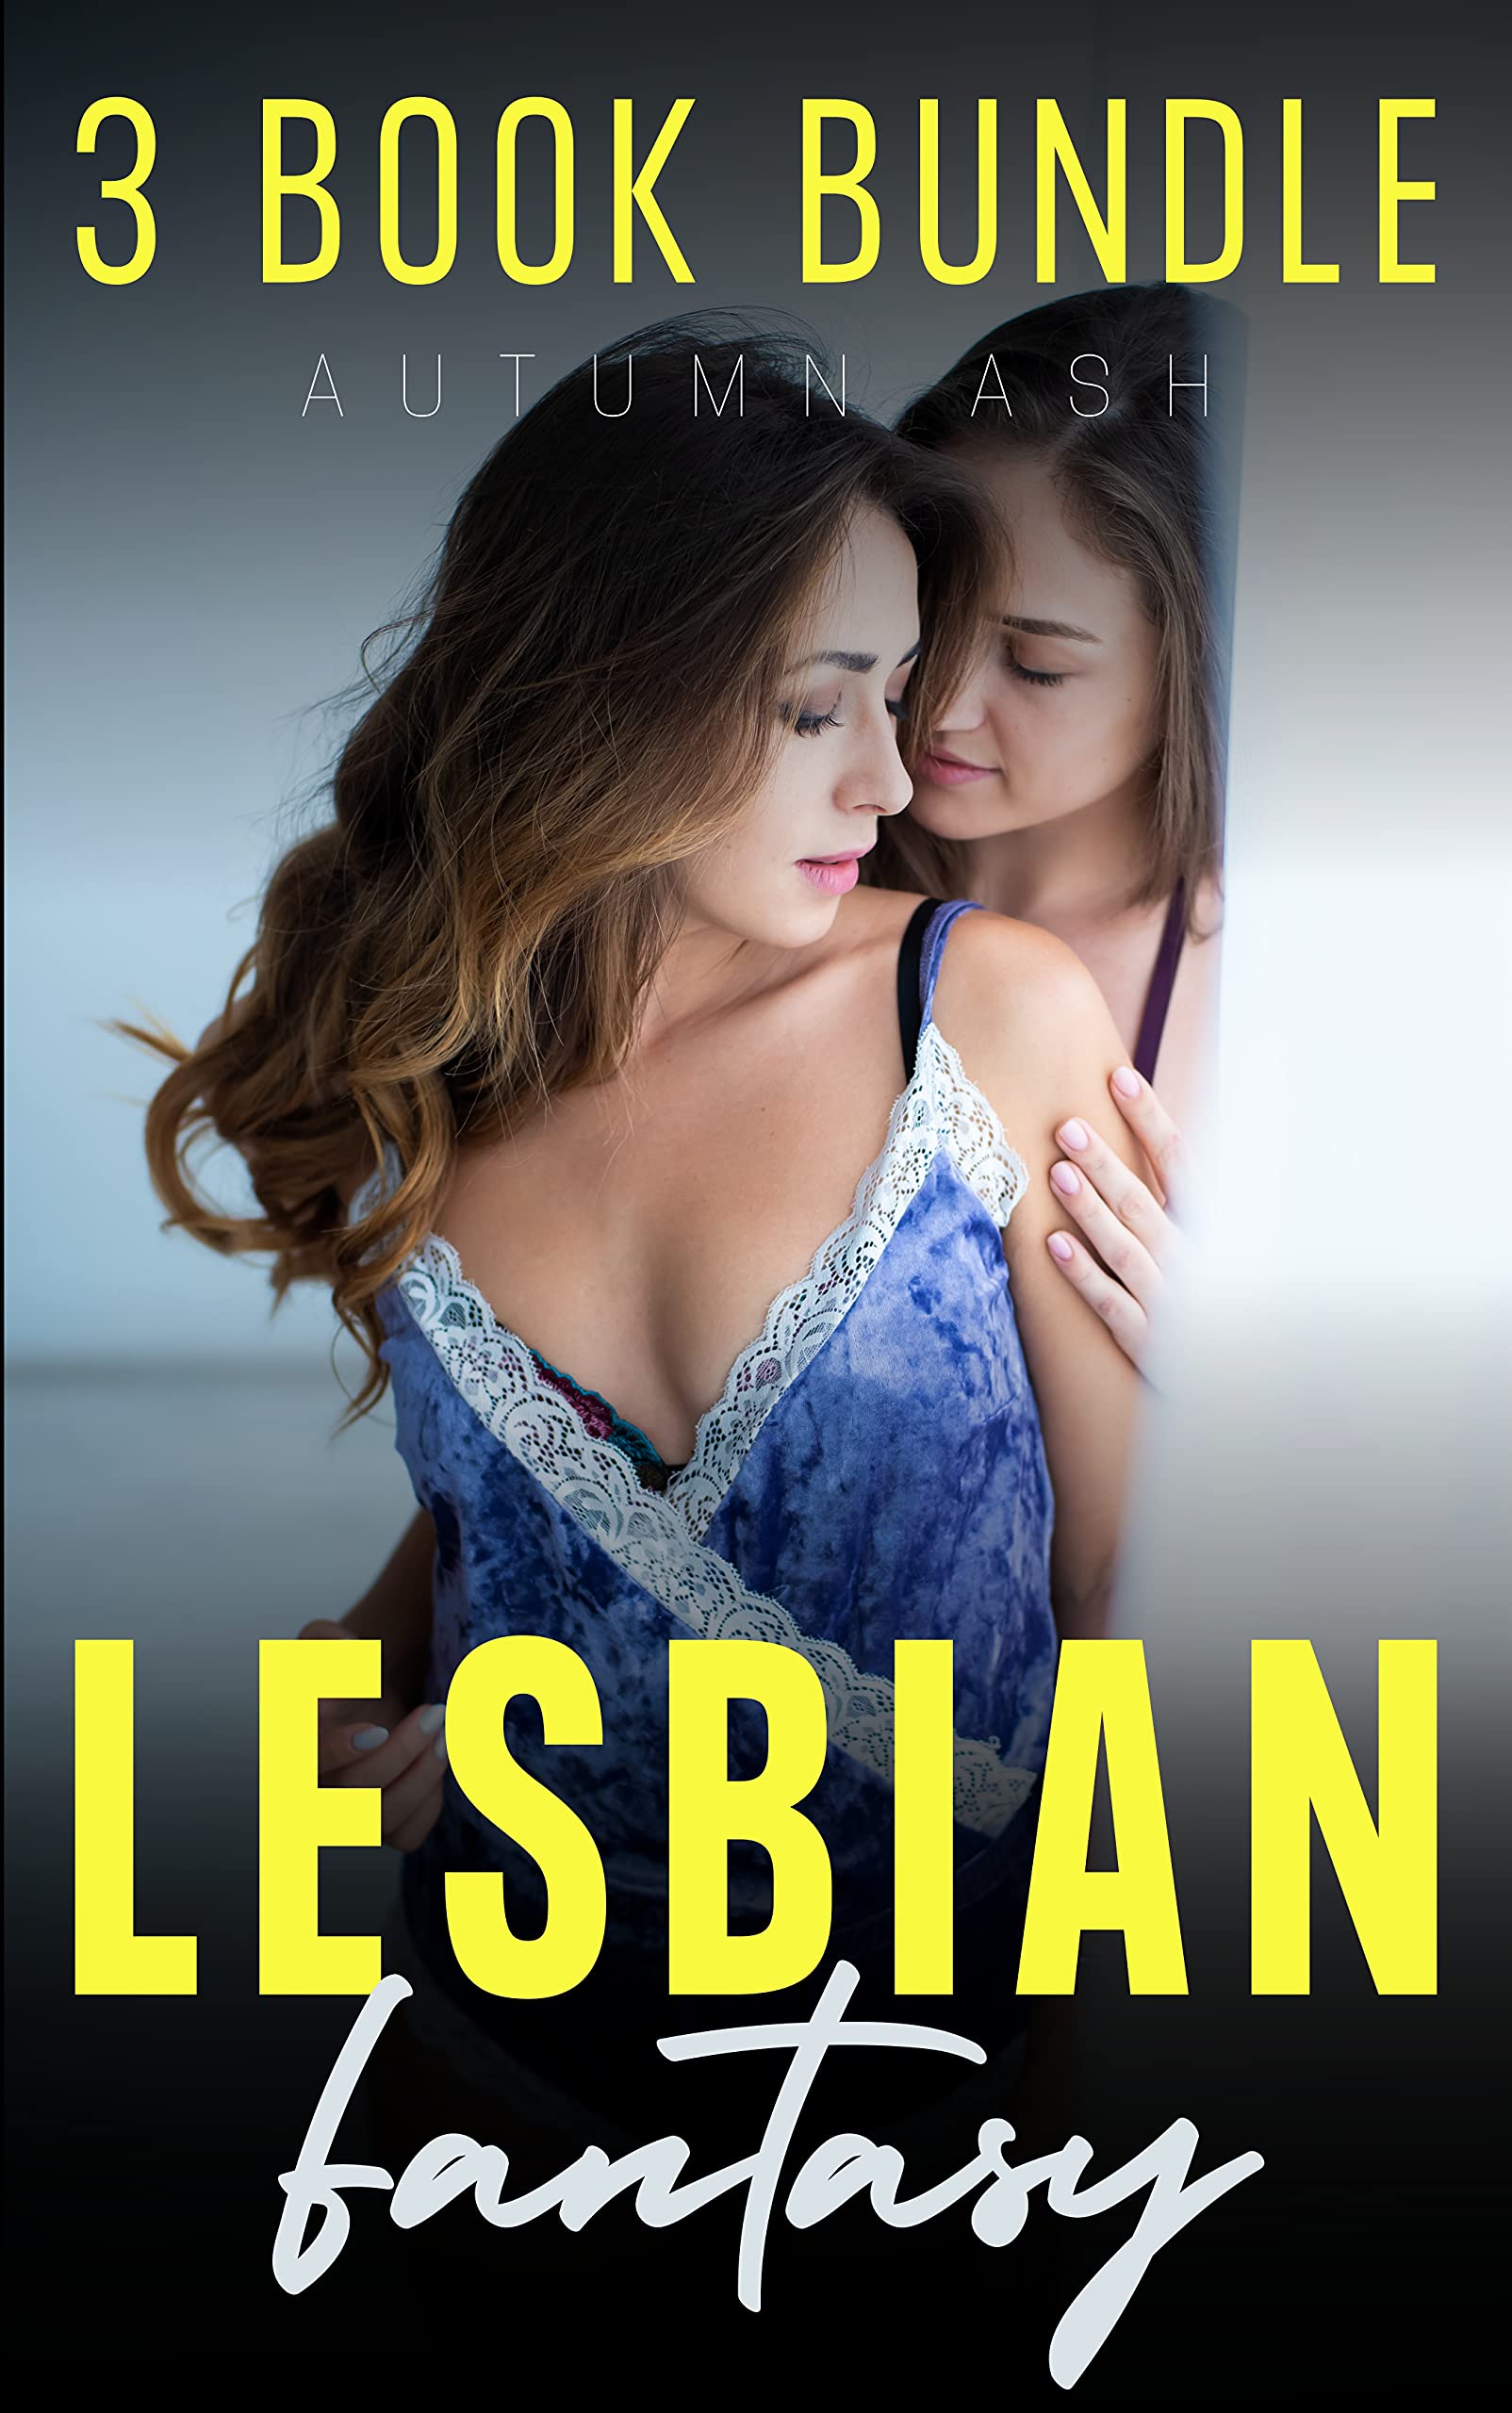 agencu dailu recommends lesbian rape fantasy stories pic